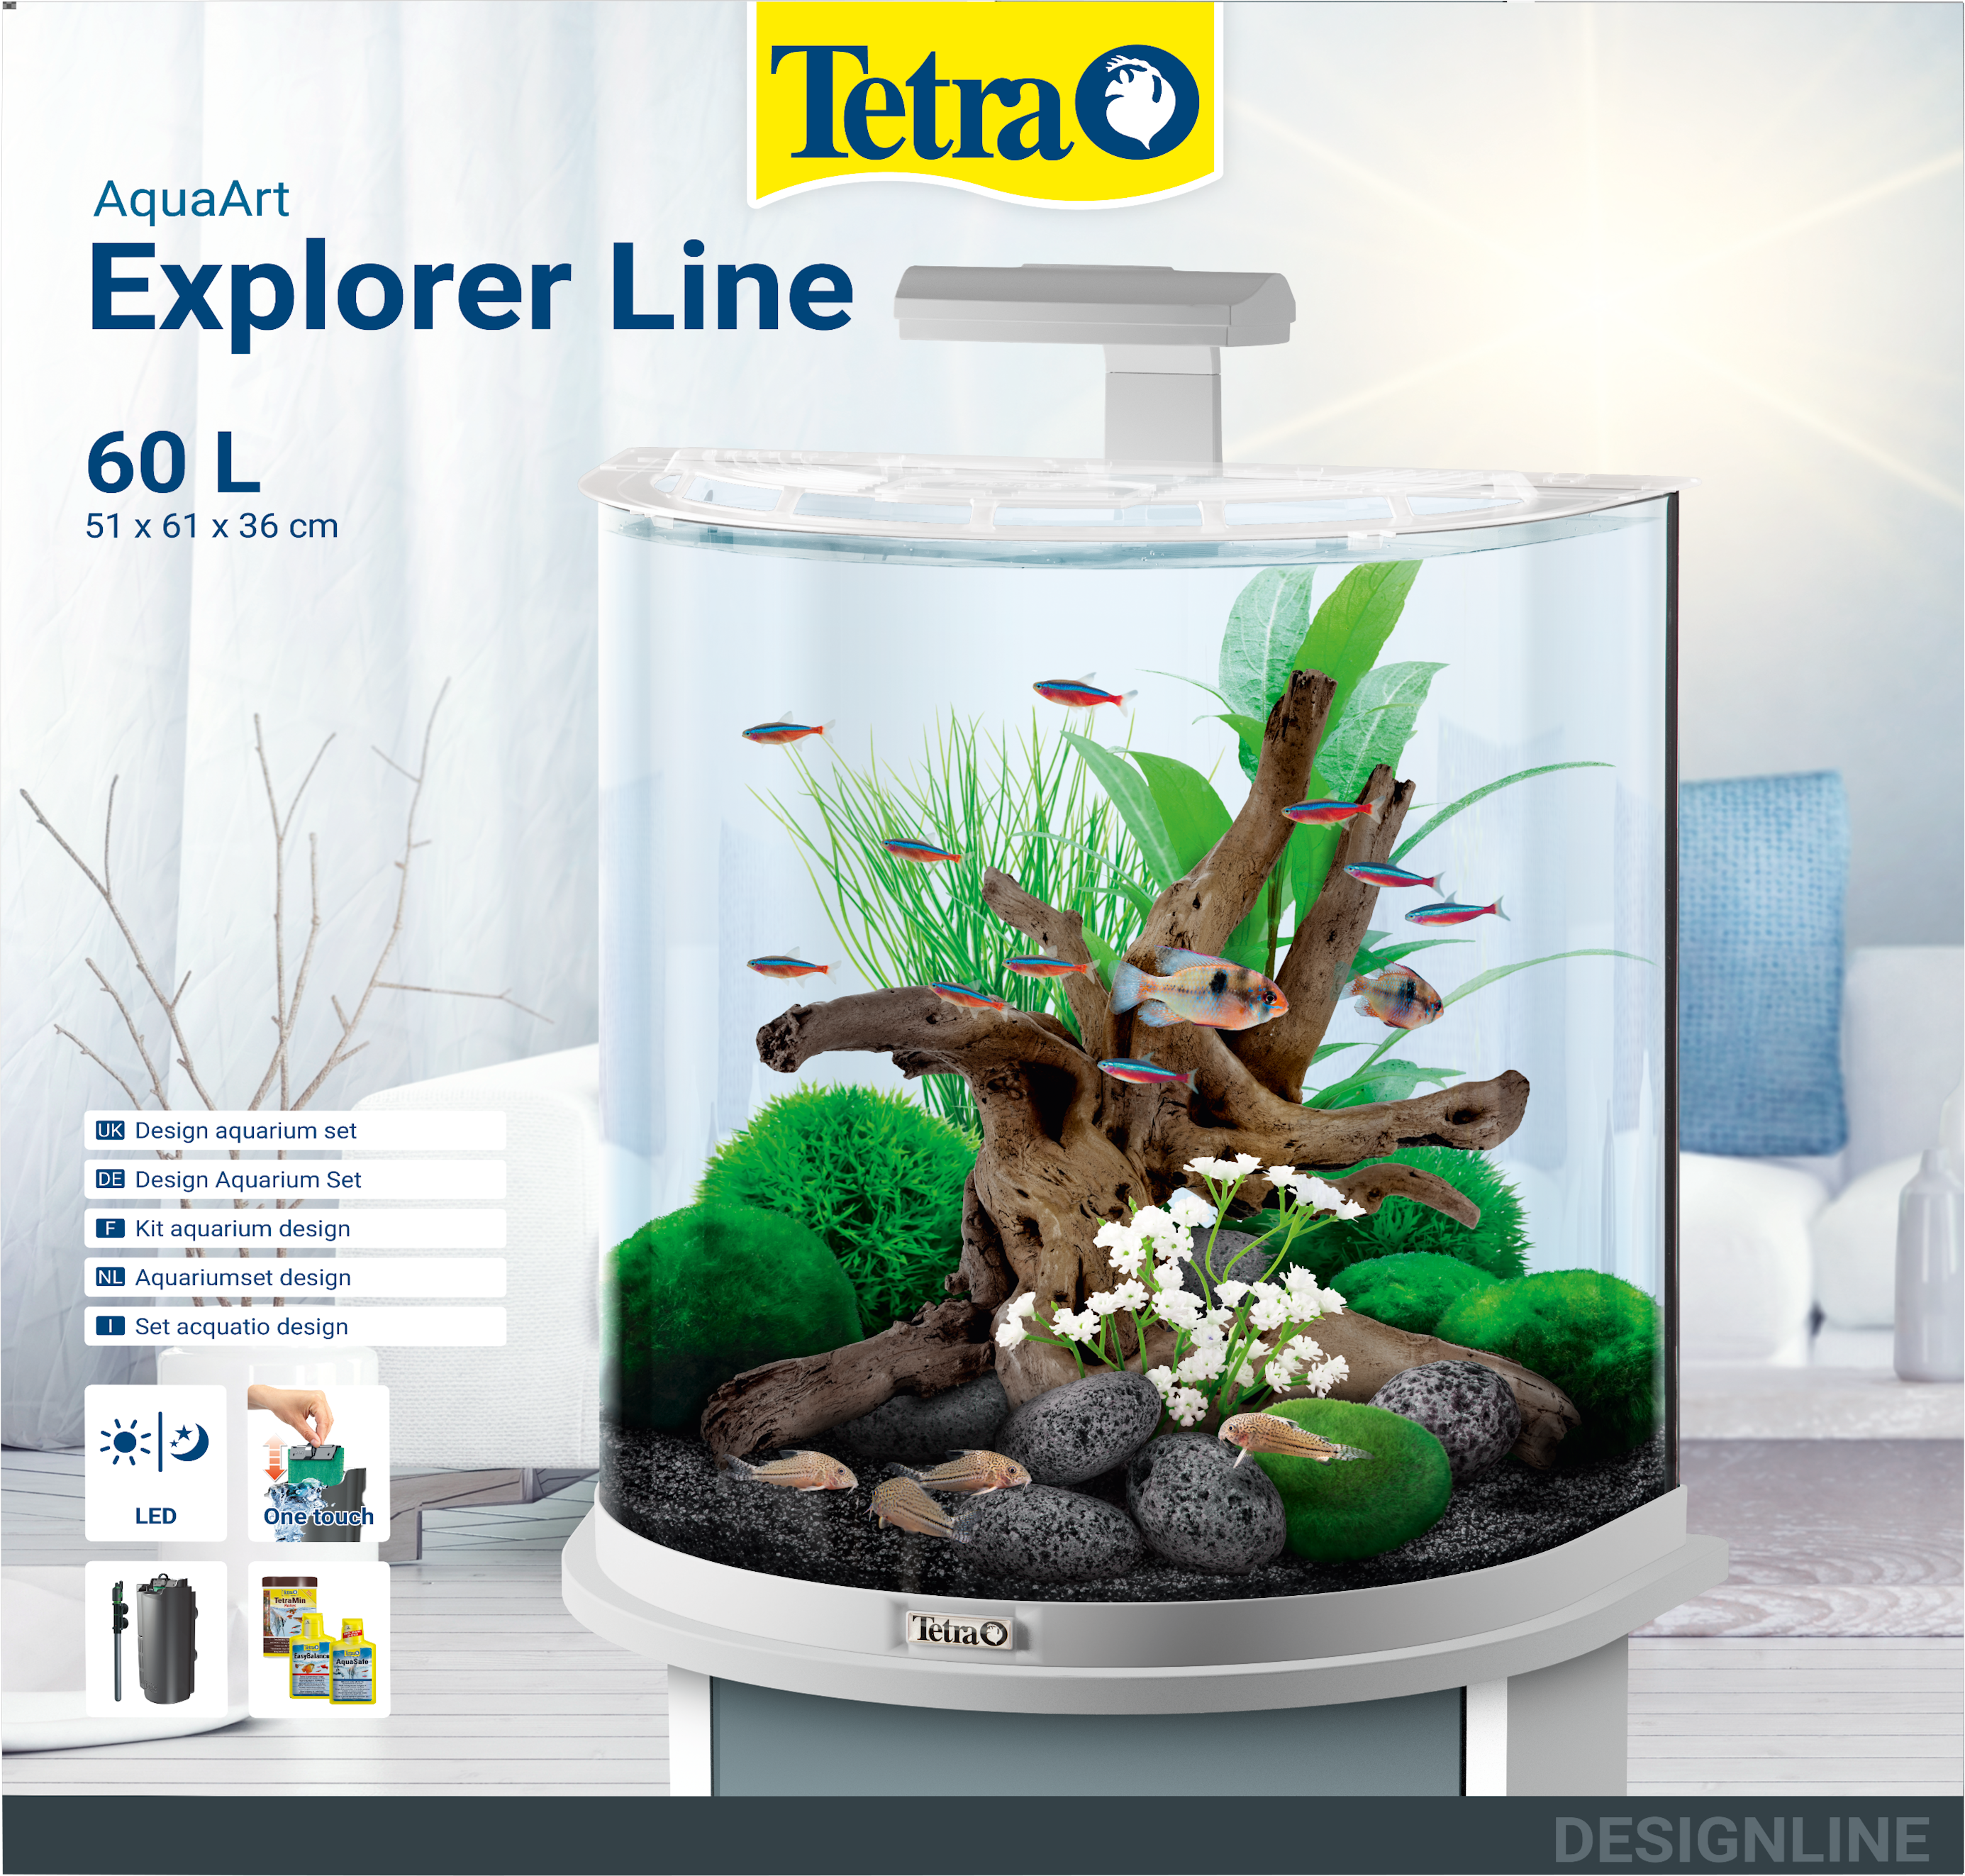 beslutte føle Sway Tetra AquaArt LED Explorer Line 60L White Edition: Tetra